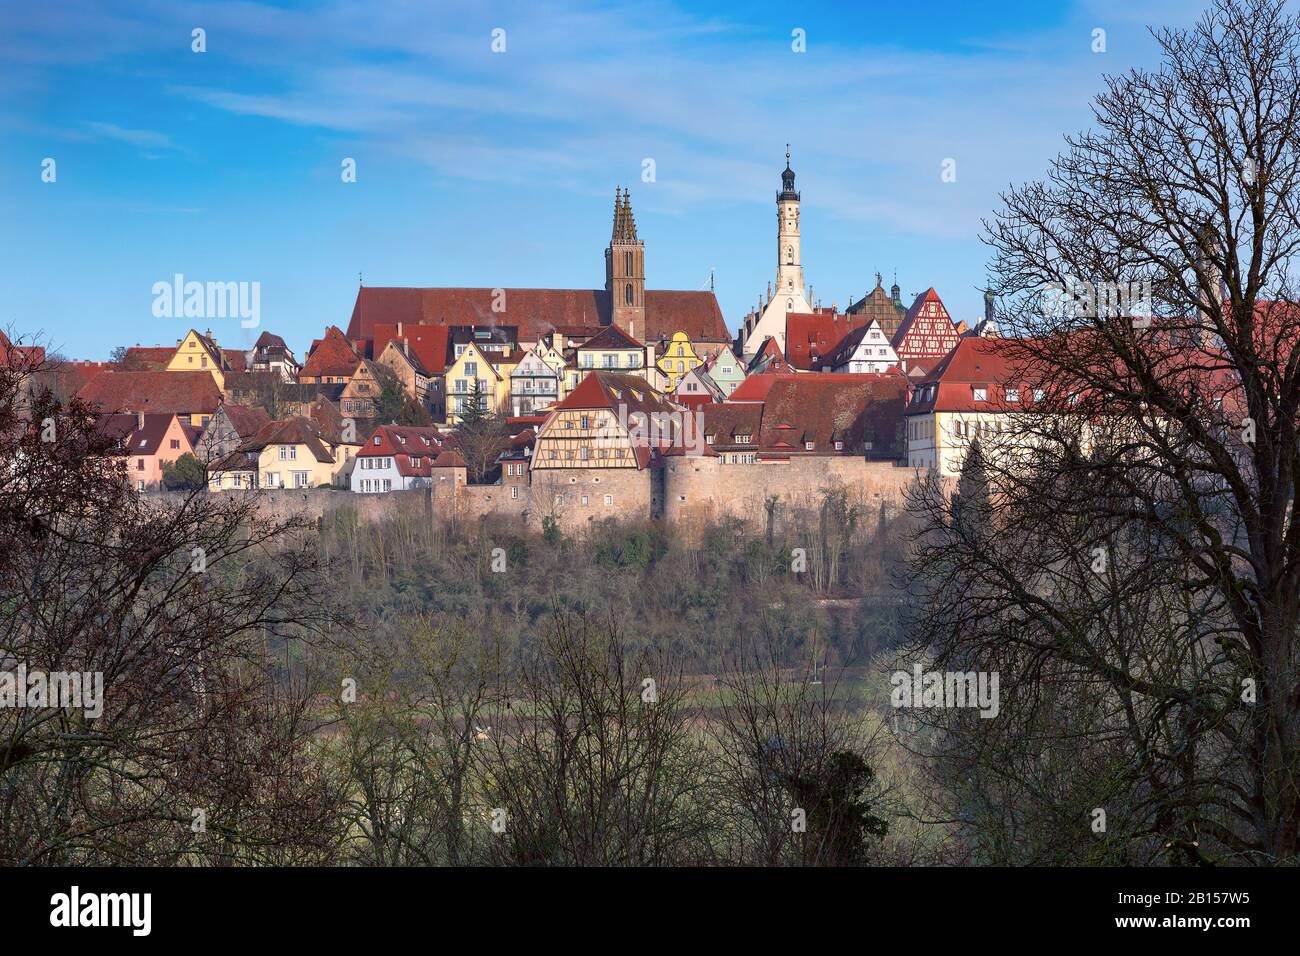 Veduta aerea delle mura della città, delle pittoresche facciate colorate e dei tetti della città vecchia medievale di Rothenburg ob der Tauber, Baviera, Germania Foto Stock